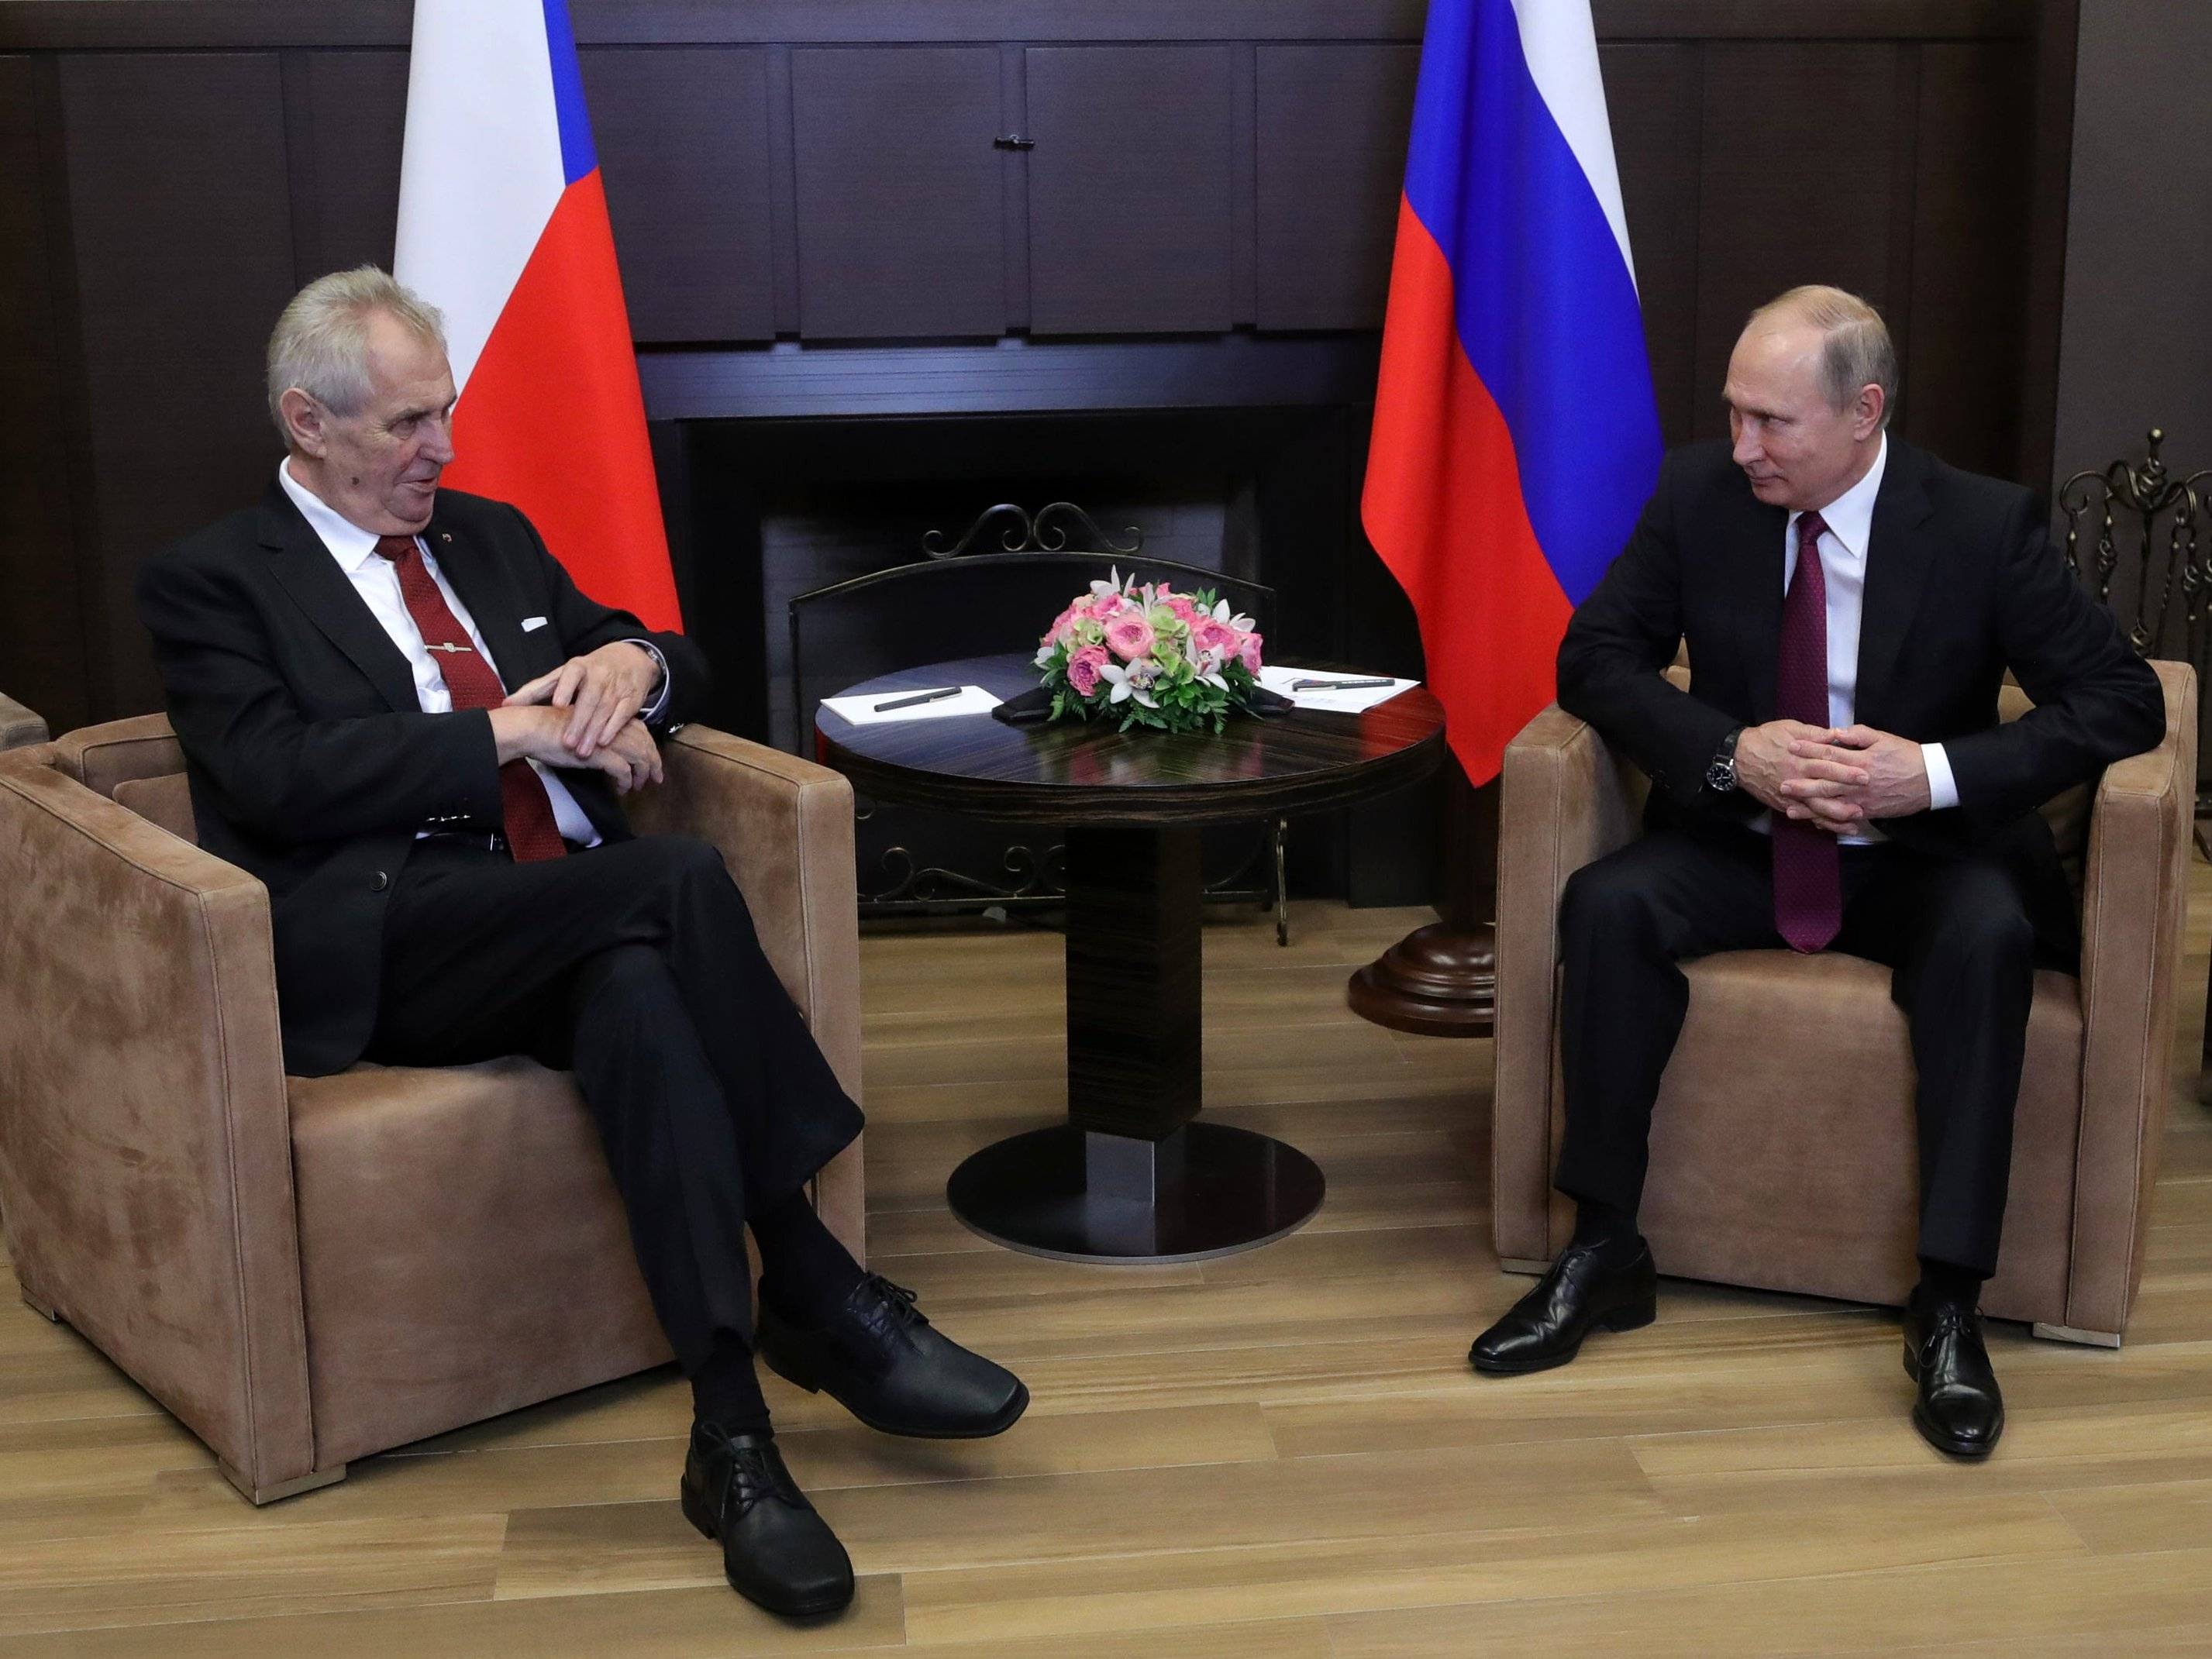 Dwaj mezczyźni siedza w fotelach na tle flag Rosji i Czech (Putin i Zeman)